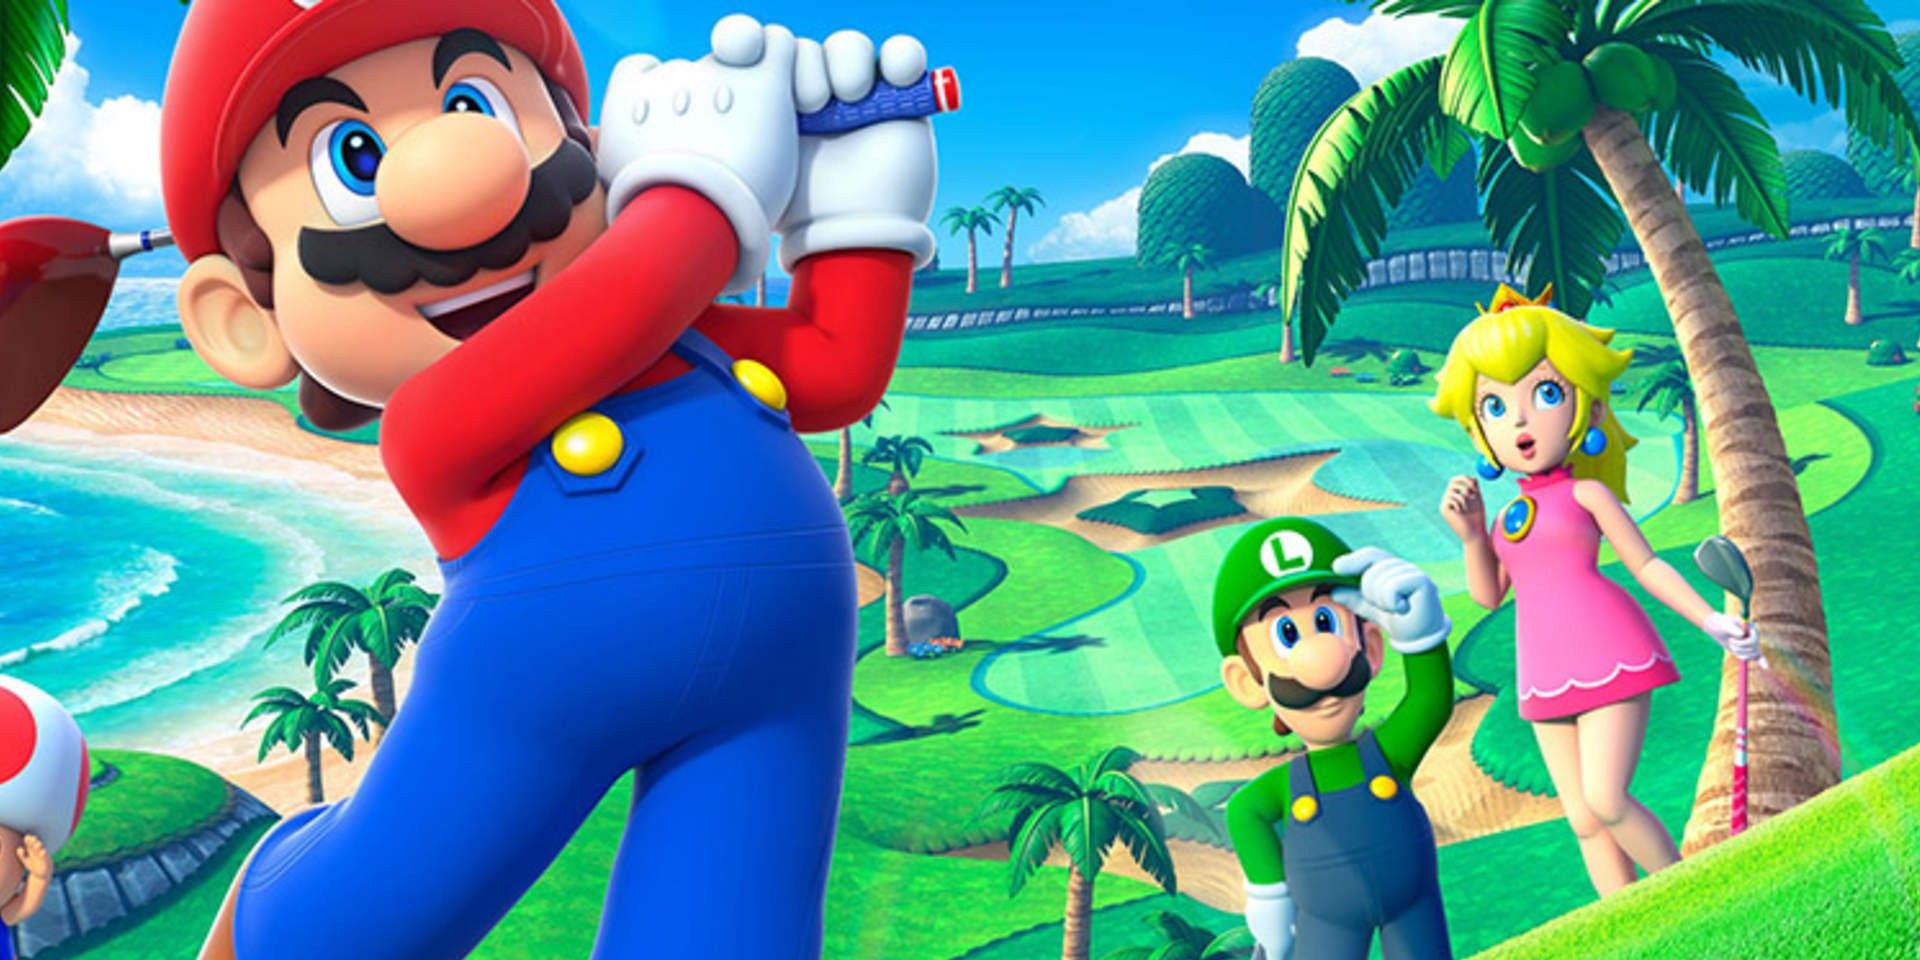 Se rumorea que el nuevo juego de Mario Sports se lanzará a principios de 2021 en Nintendo Switch